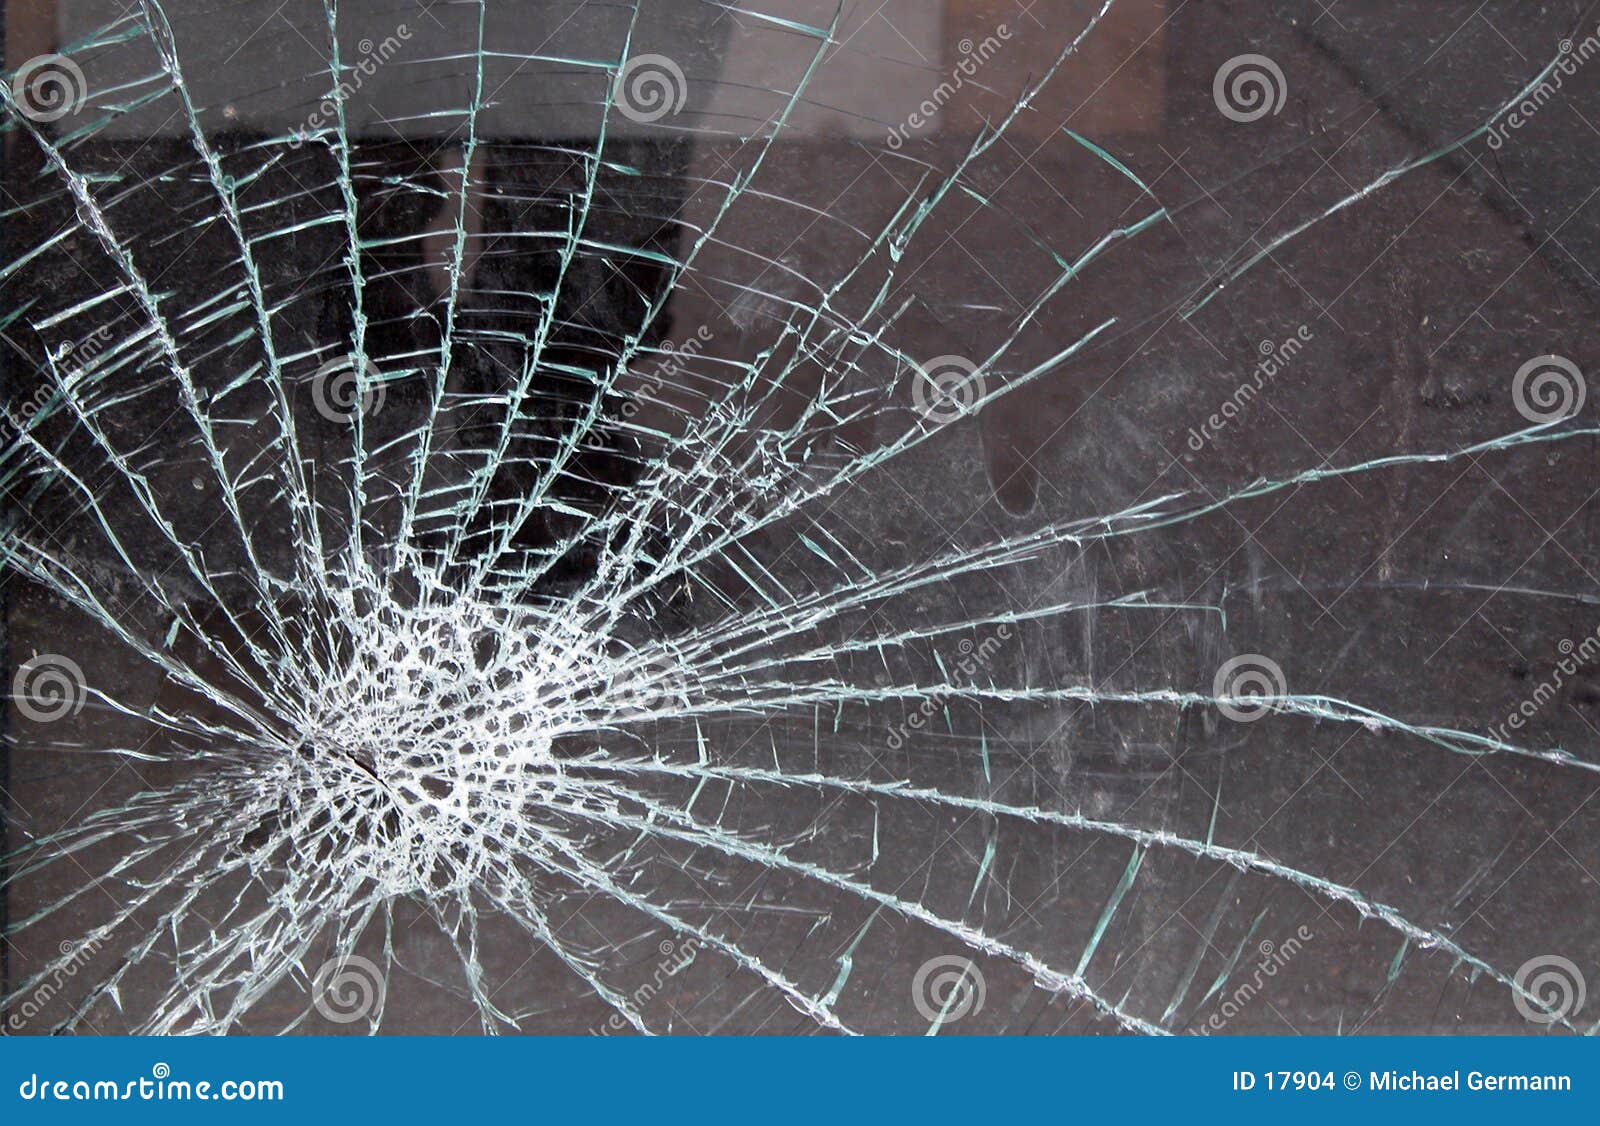 玻璃被打碎的视窗 库存图片. 图片 包括有 边缘, 破坏, 故障, 背包, 关闭, 破裂, 锋利, 片段 - 12799227